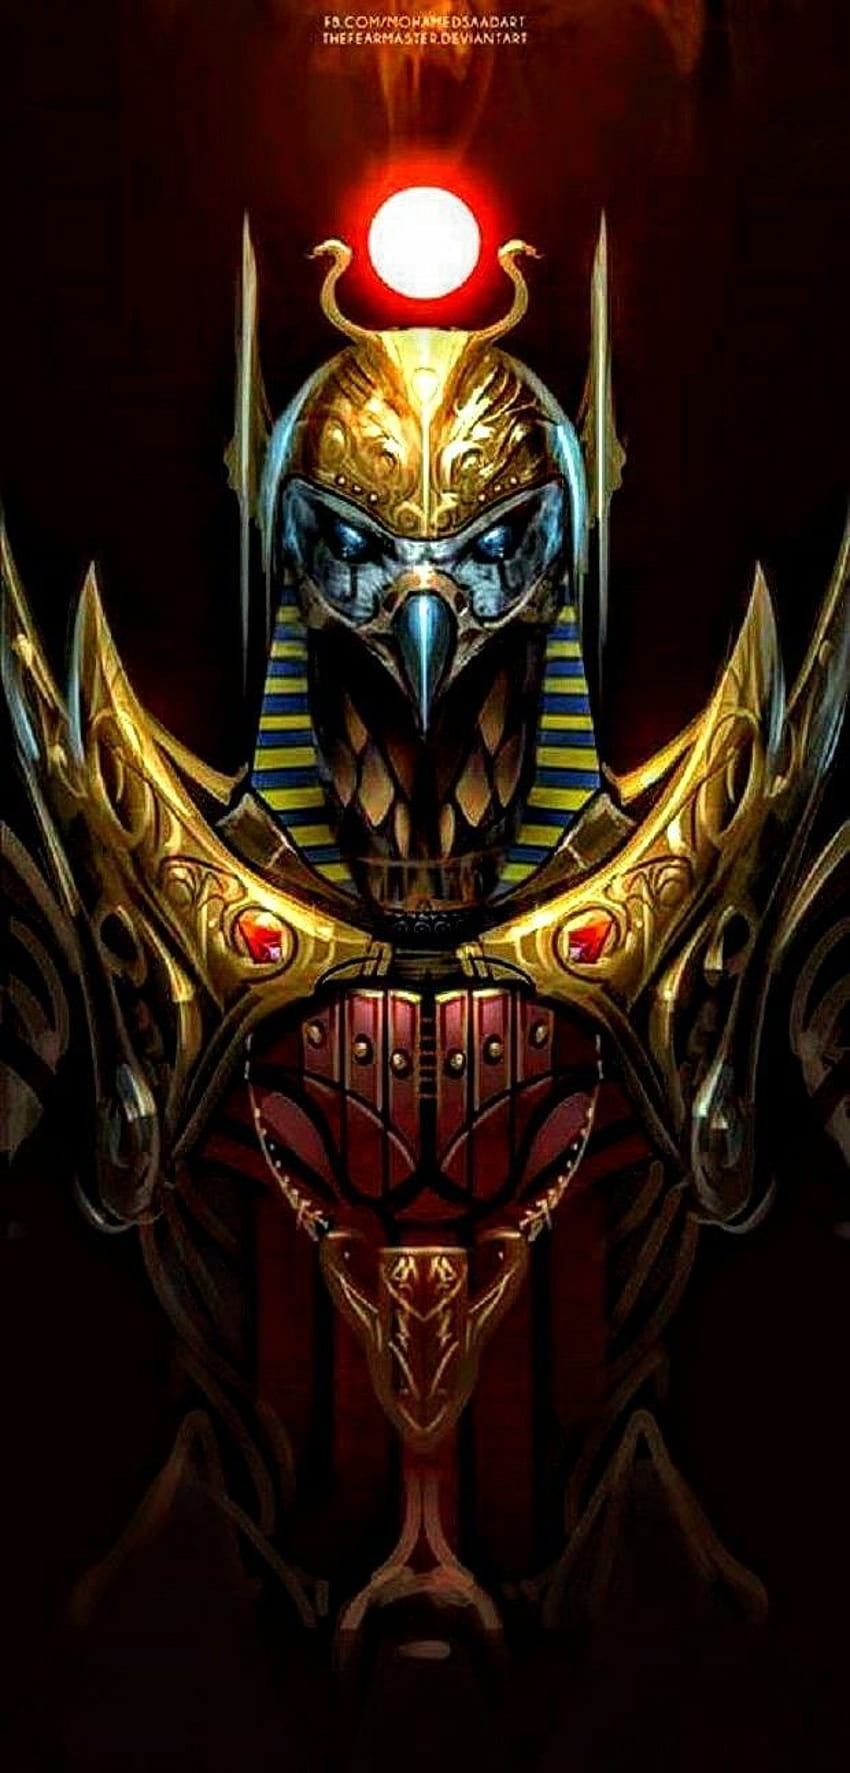 Dewa Mesir Kuno. Dewa Mesir kuno, dewa Mesir, Anubis dan horus, Seth Dewa Mesir wallpaper ponsel HD